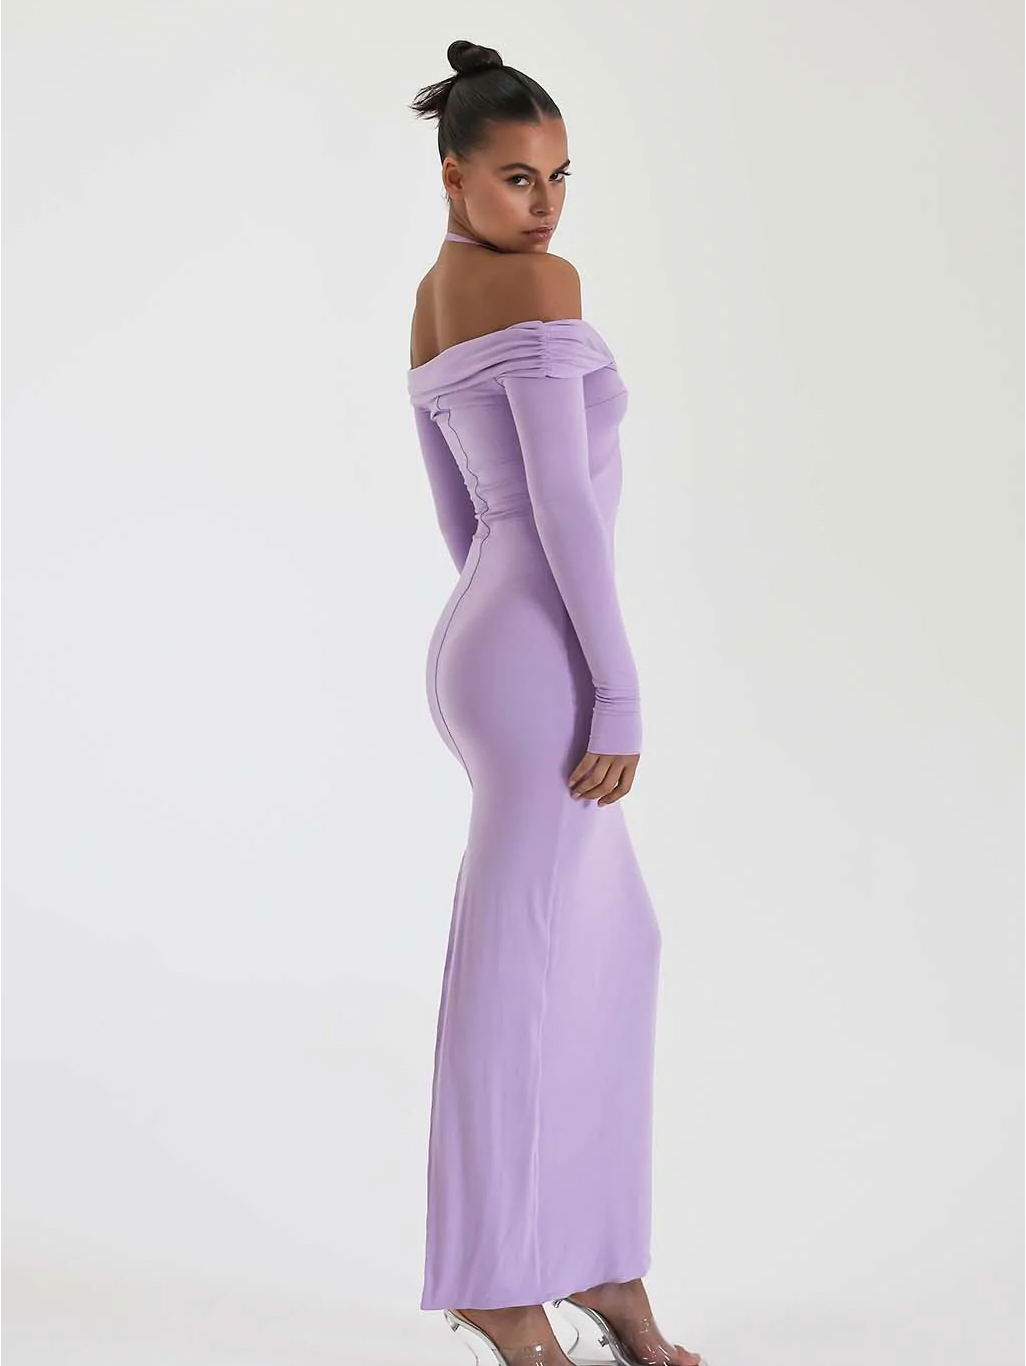 Charmaine Dress (Lilac)